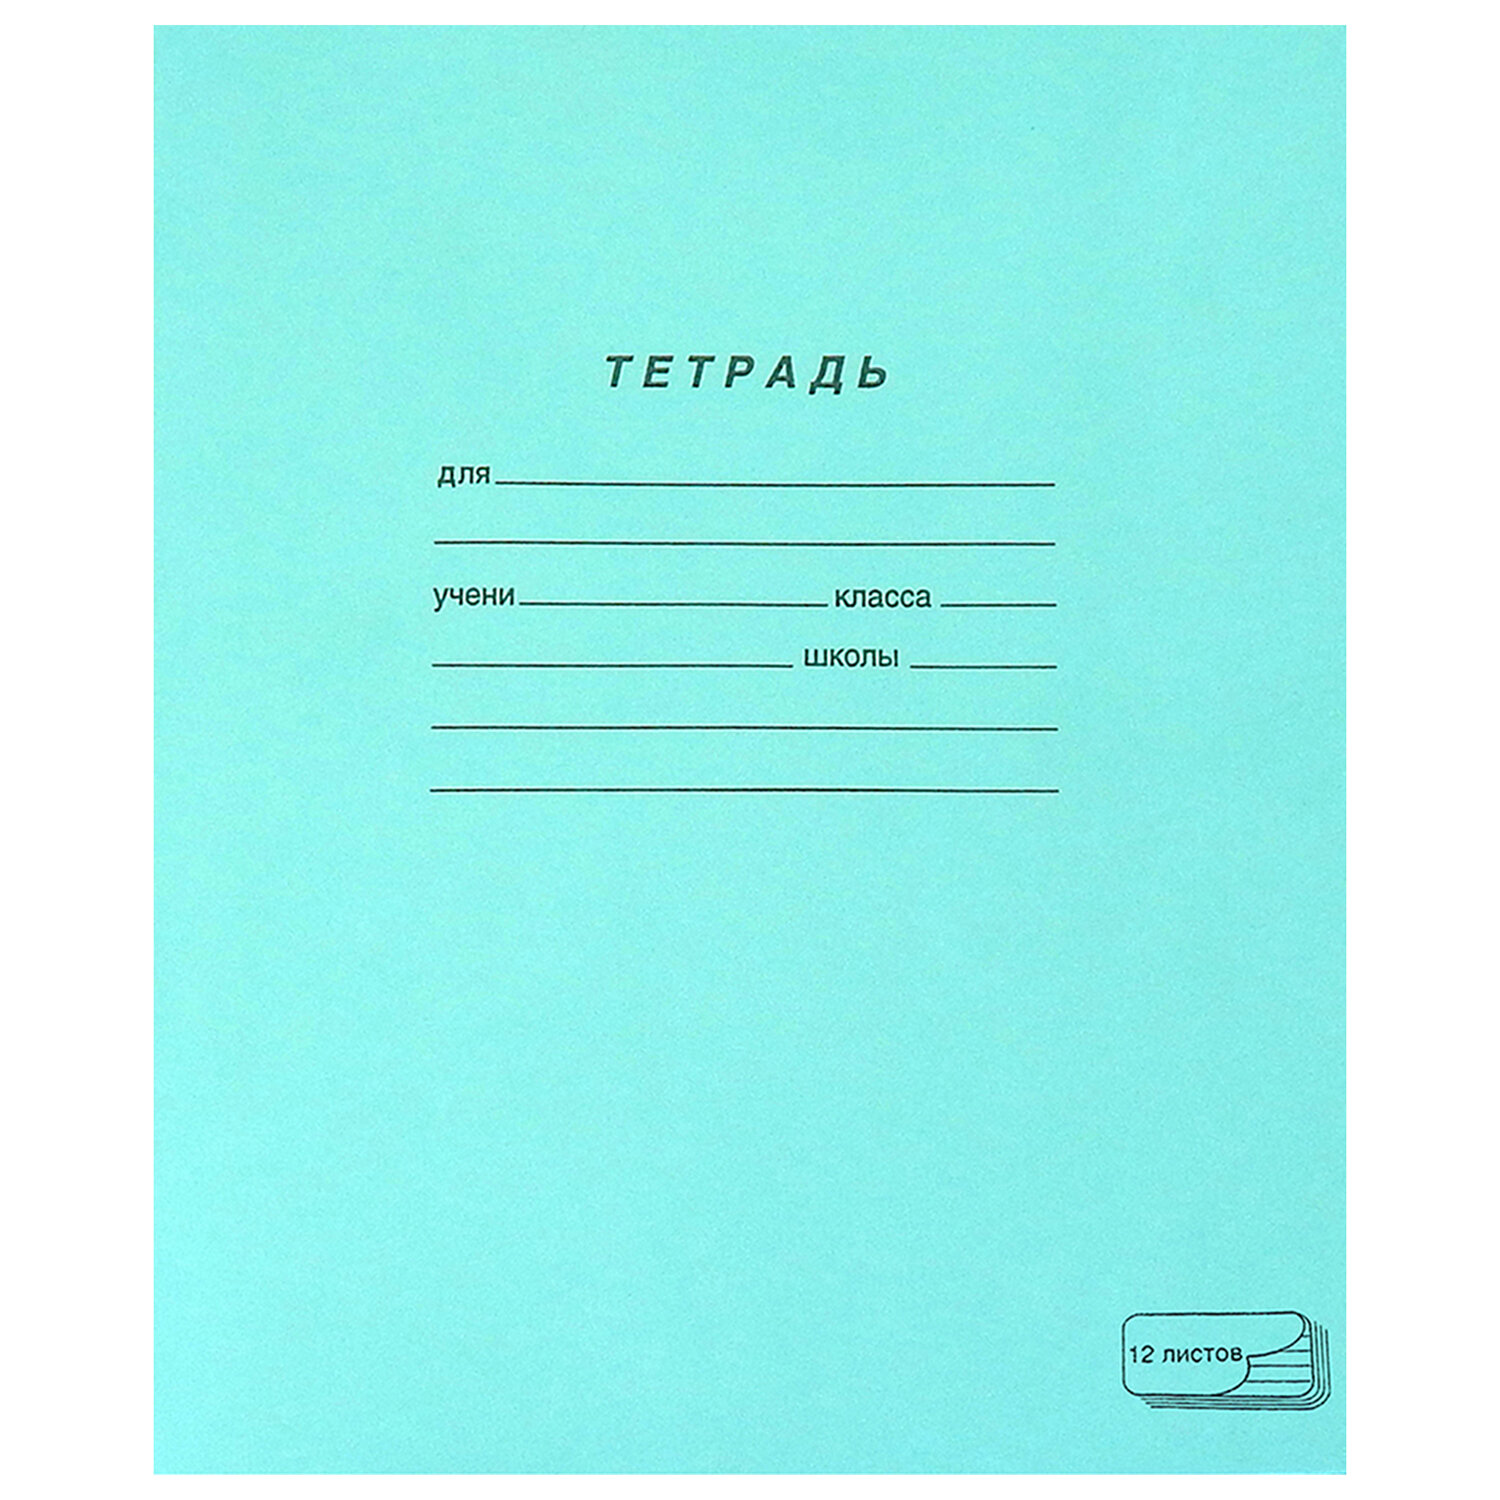 Тетрадь ЗЕЛЁНАЯ обложка 12 л., узкая линия с полями, офсет,
"ПЗБМ", 19964